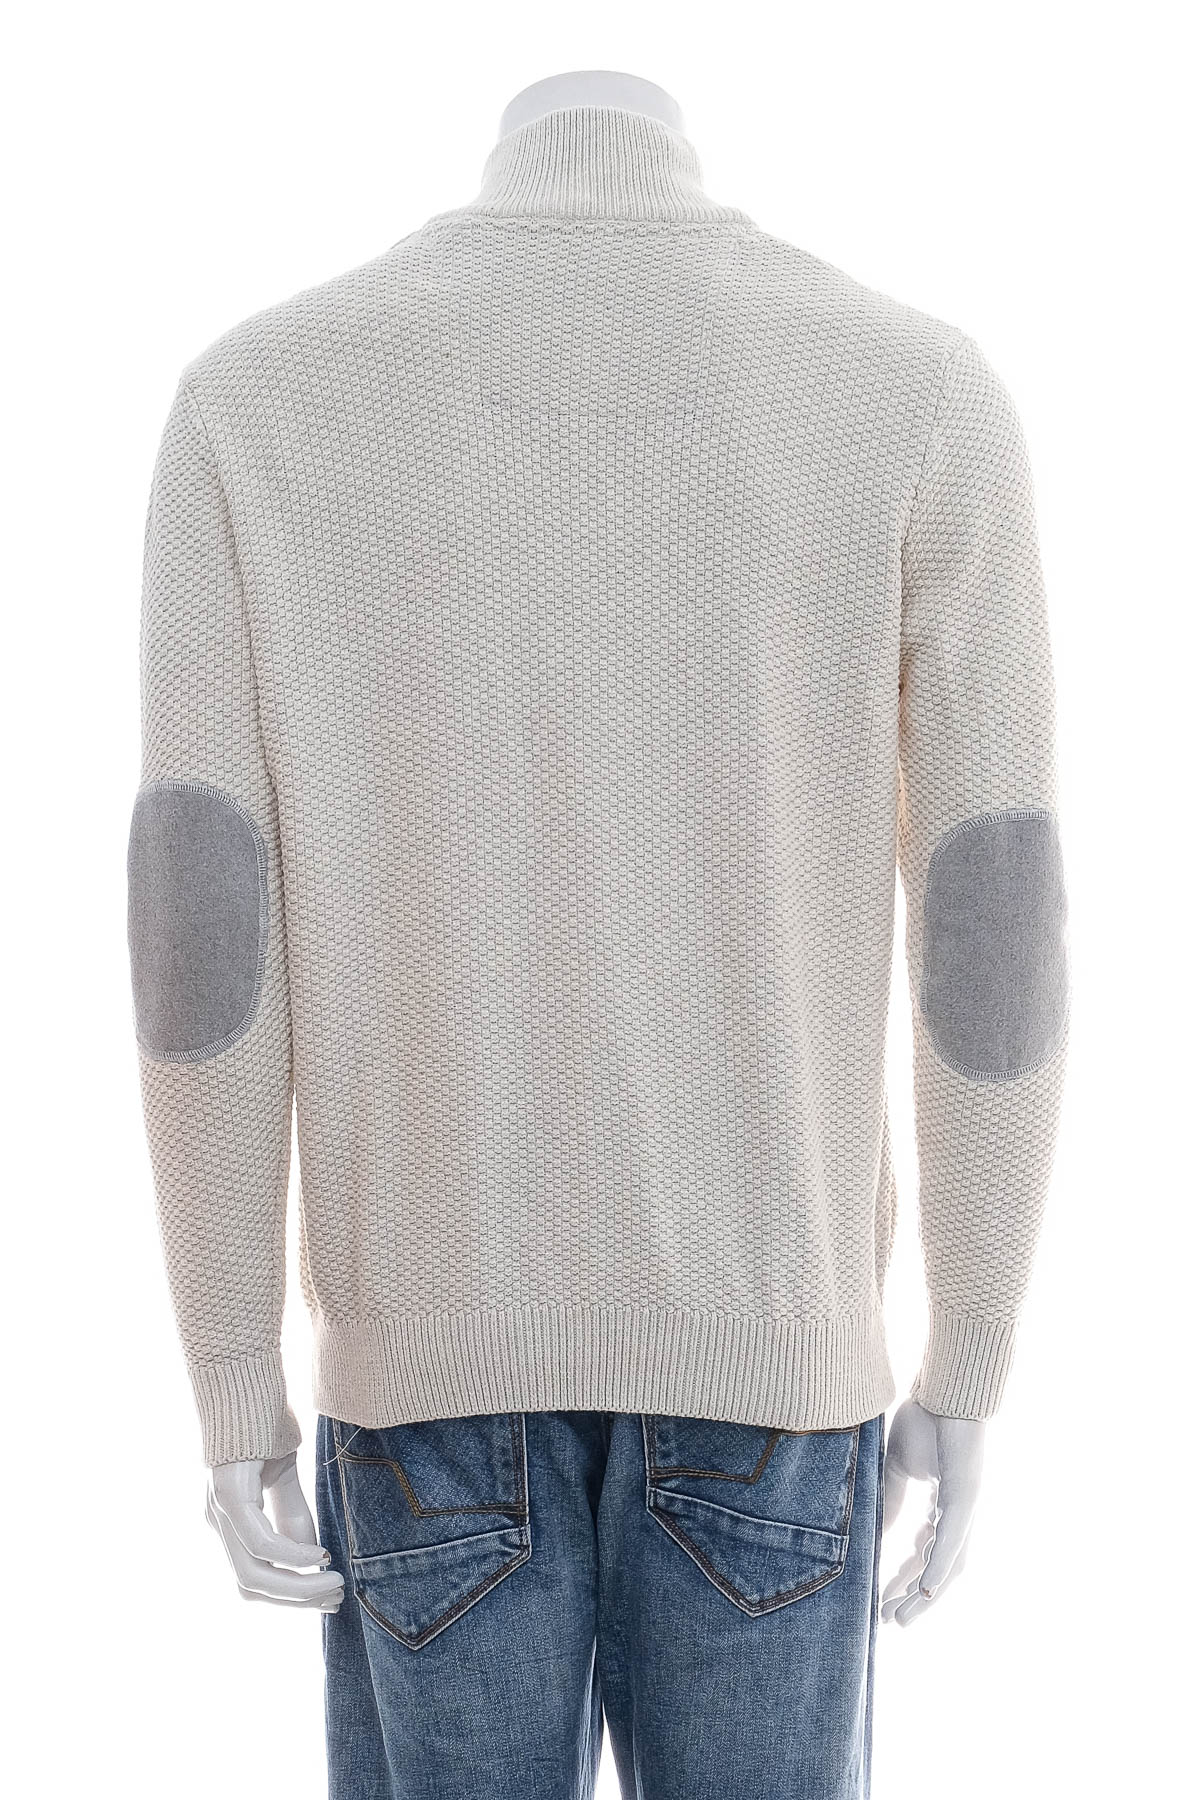 Men's sweater - Jacques Lemans - 1